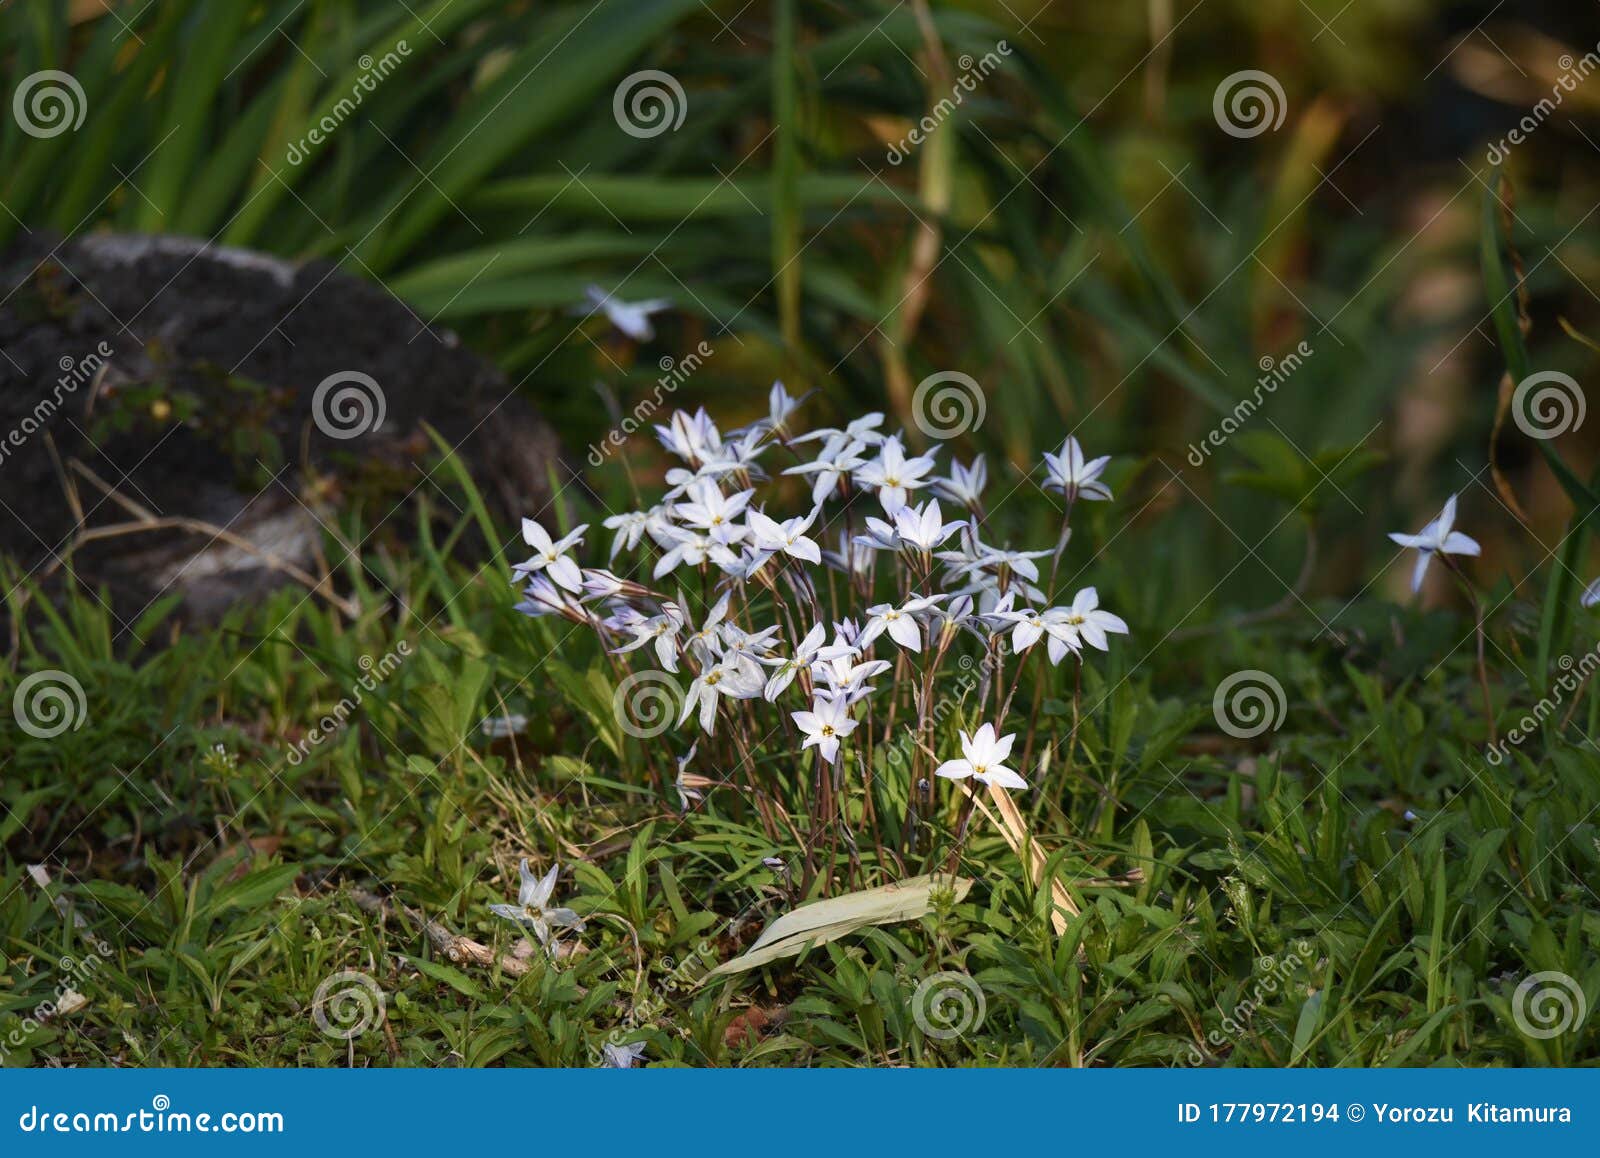 spring starflower ipheion uniflorum